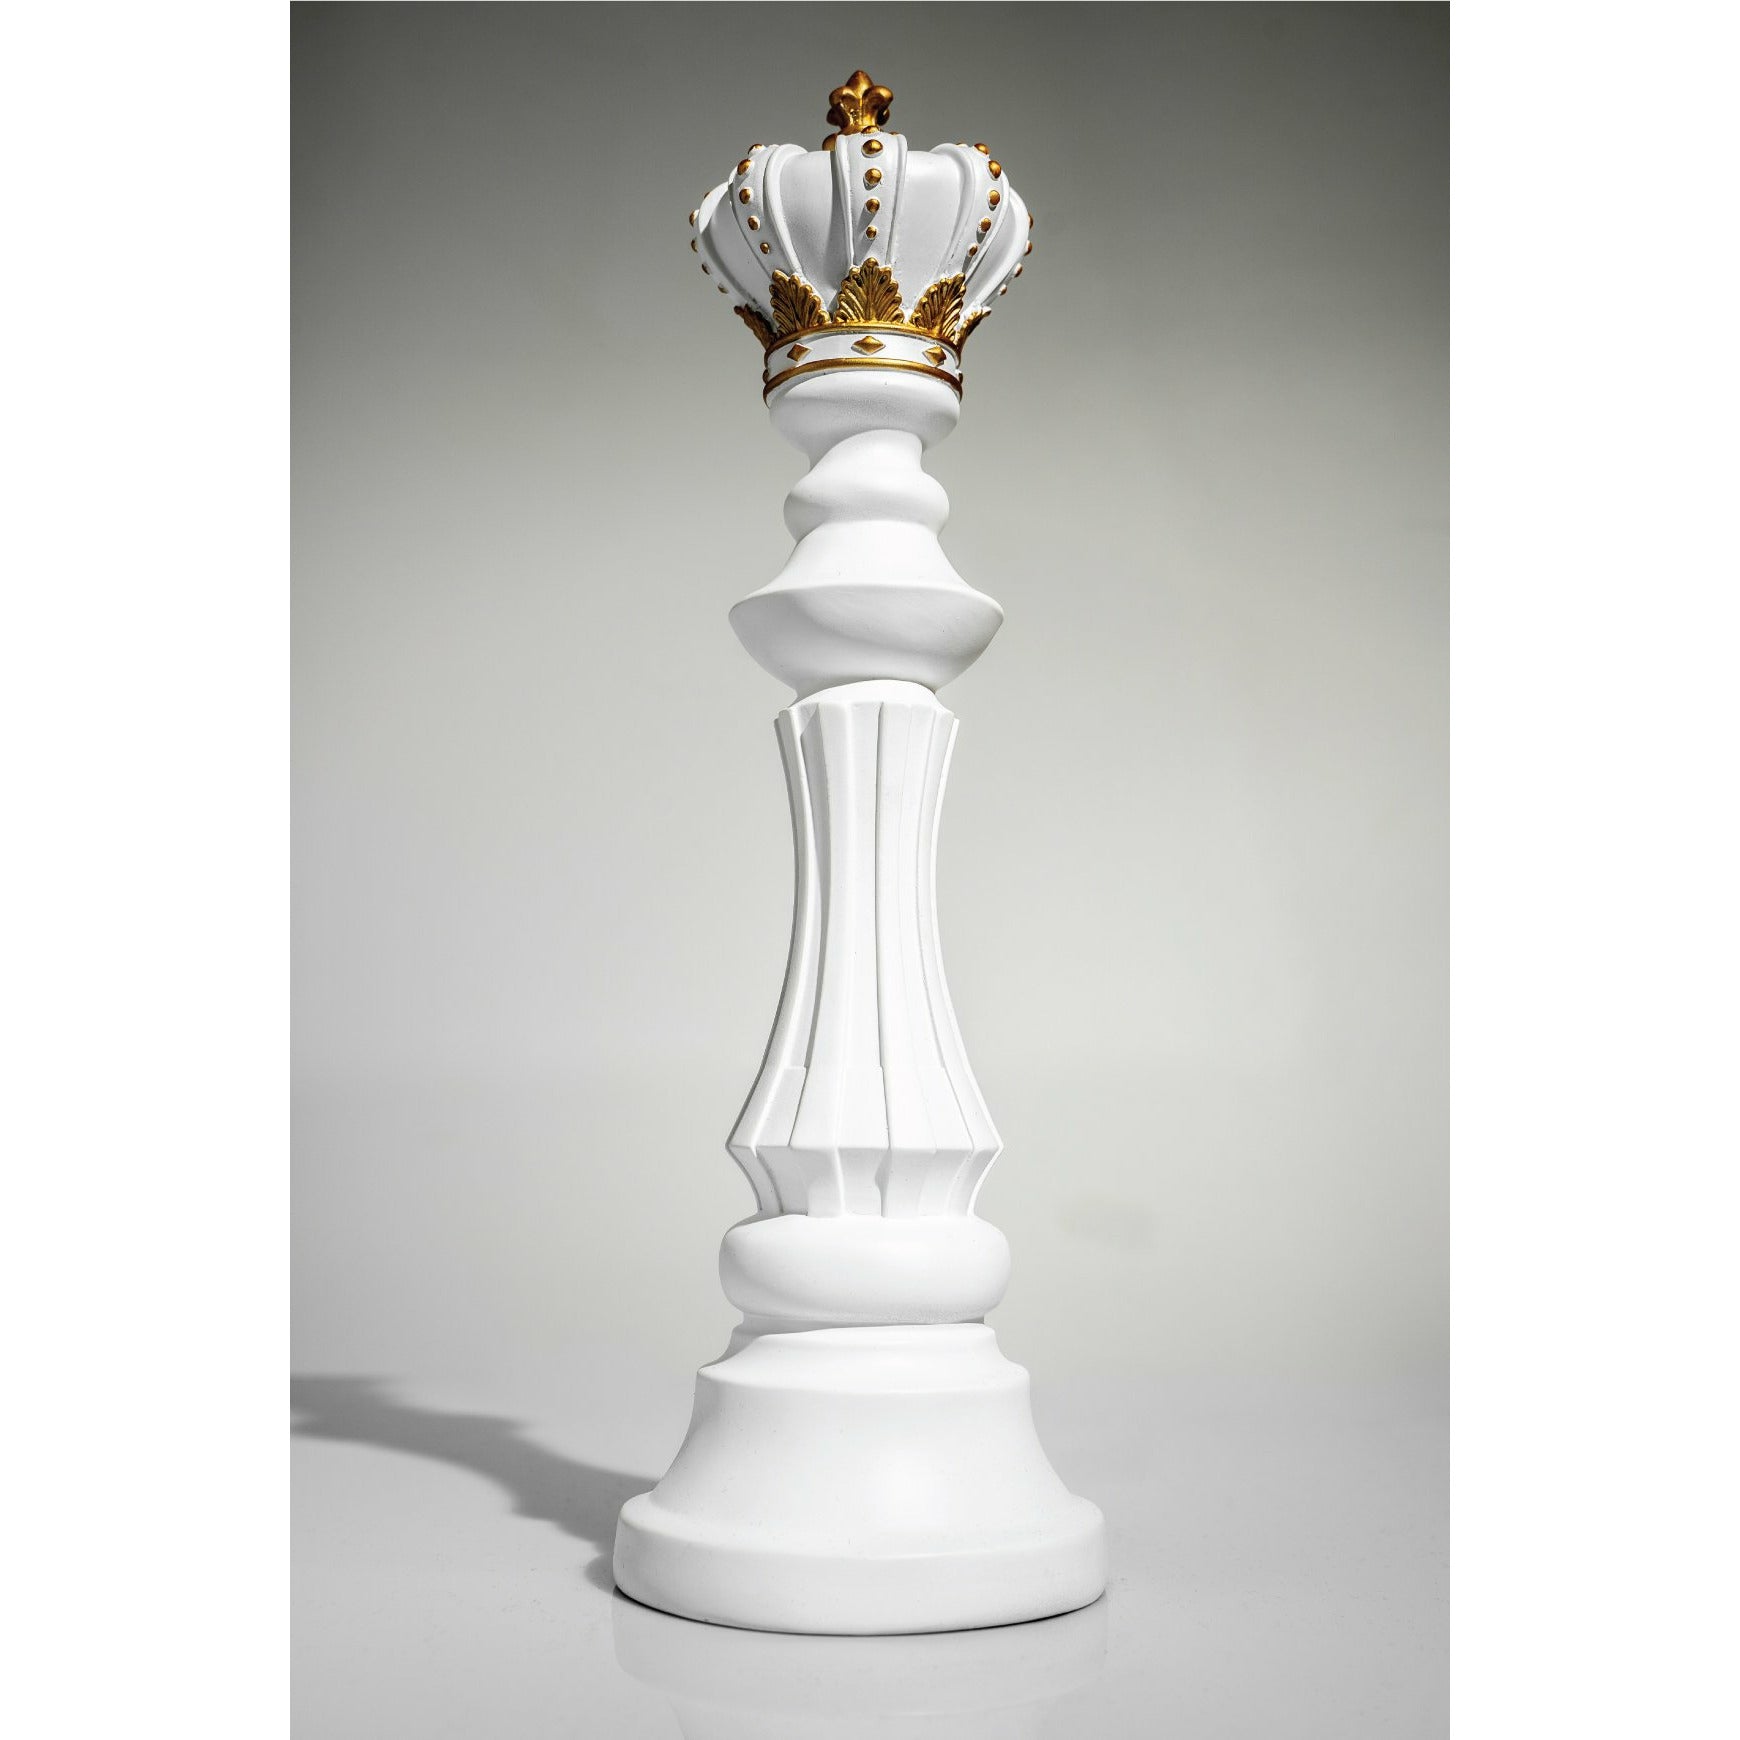 chess pieces white king